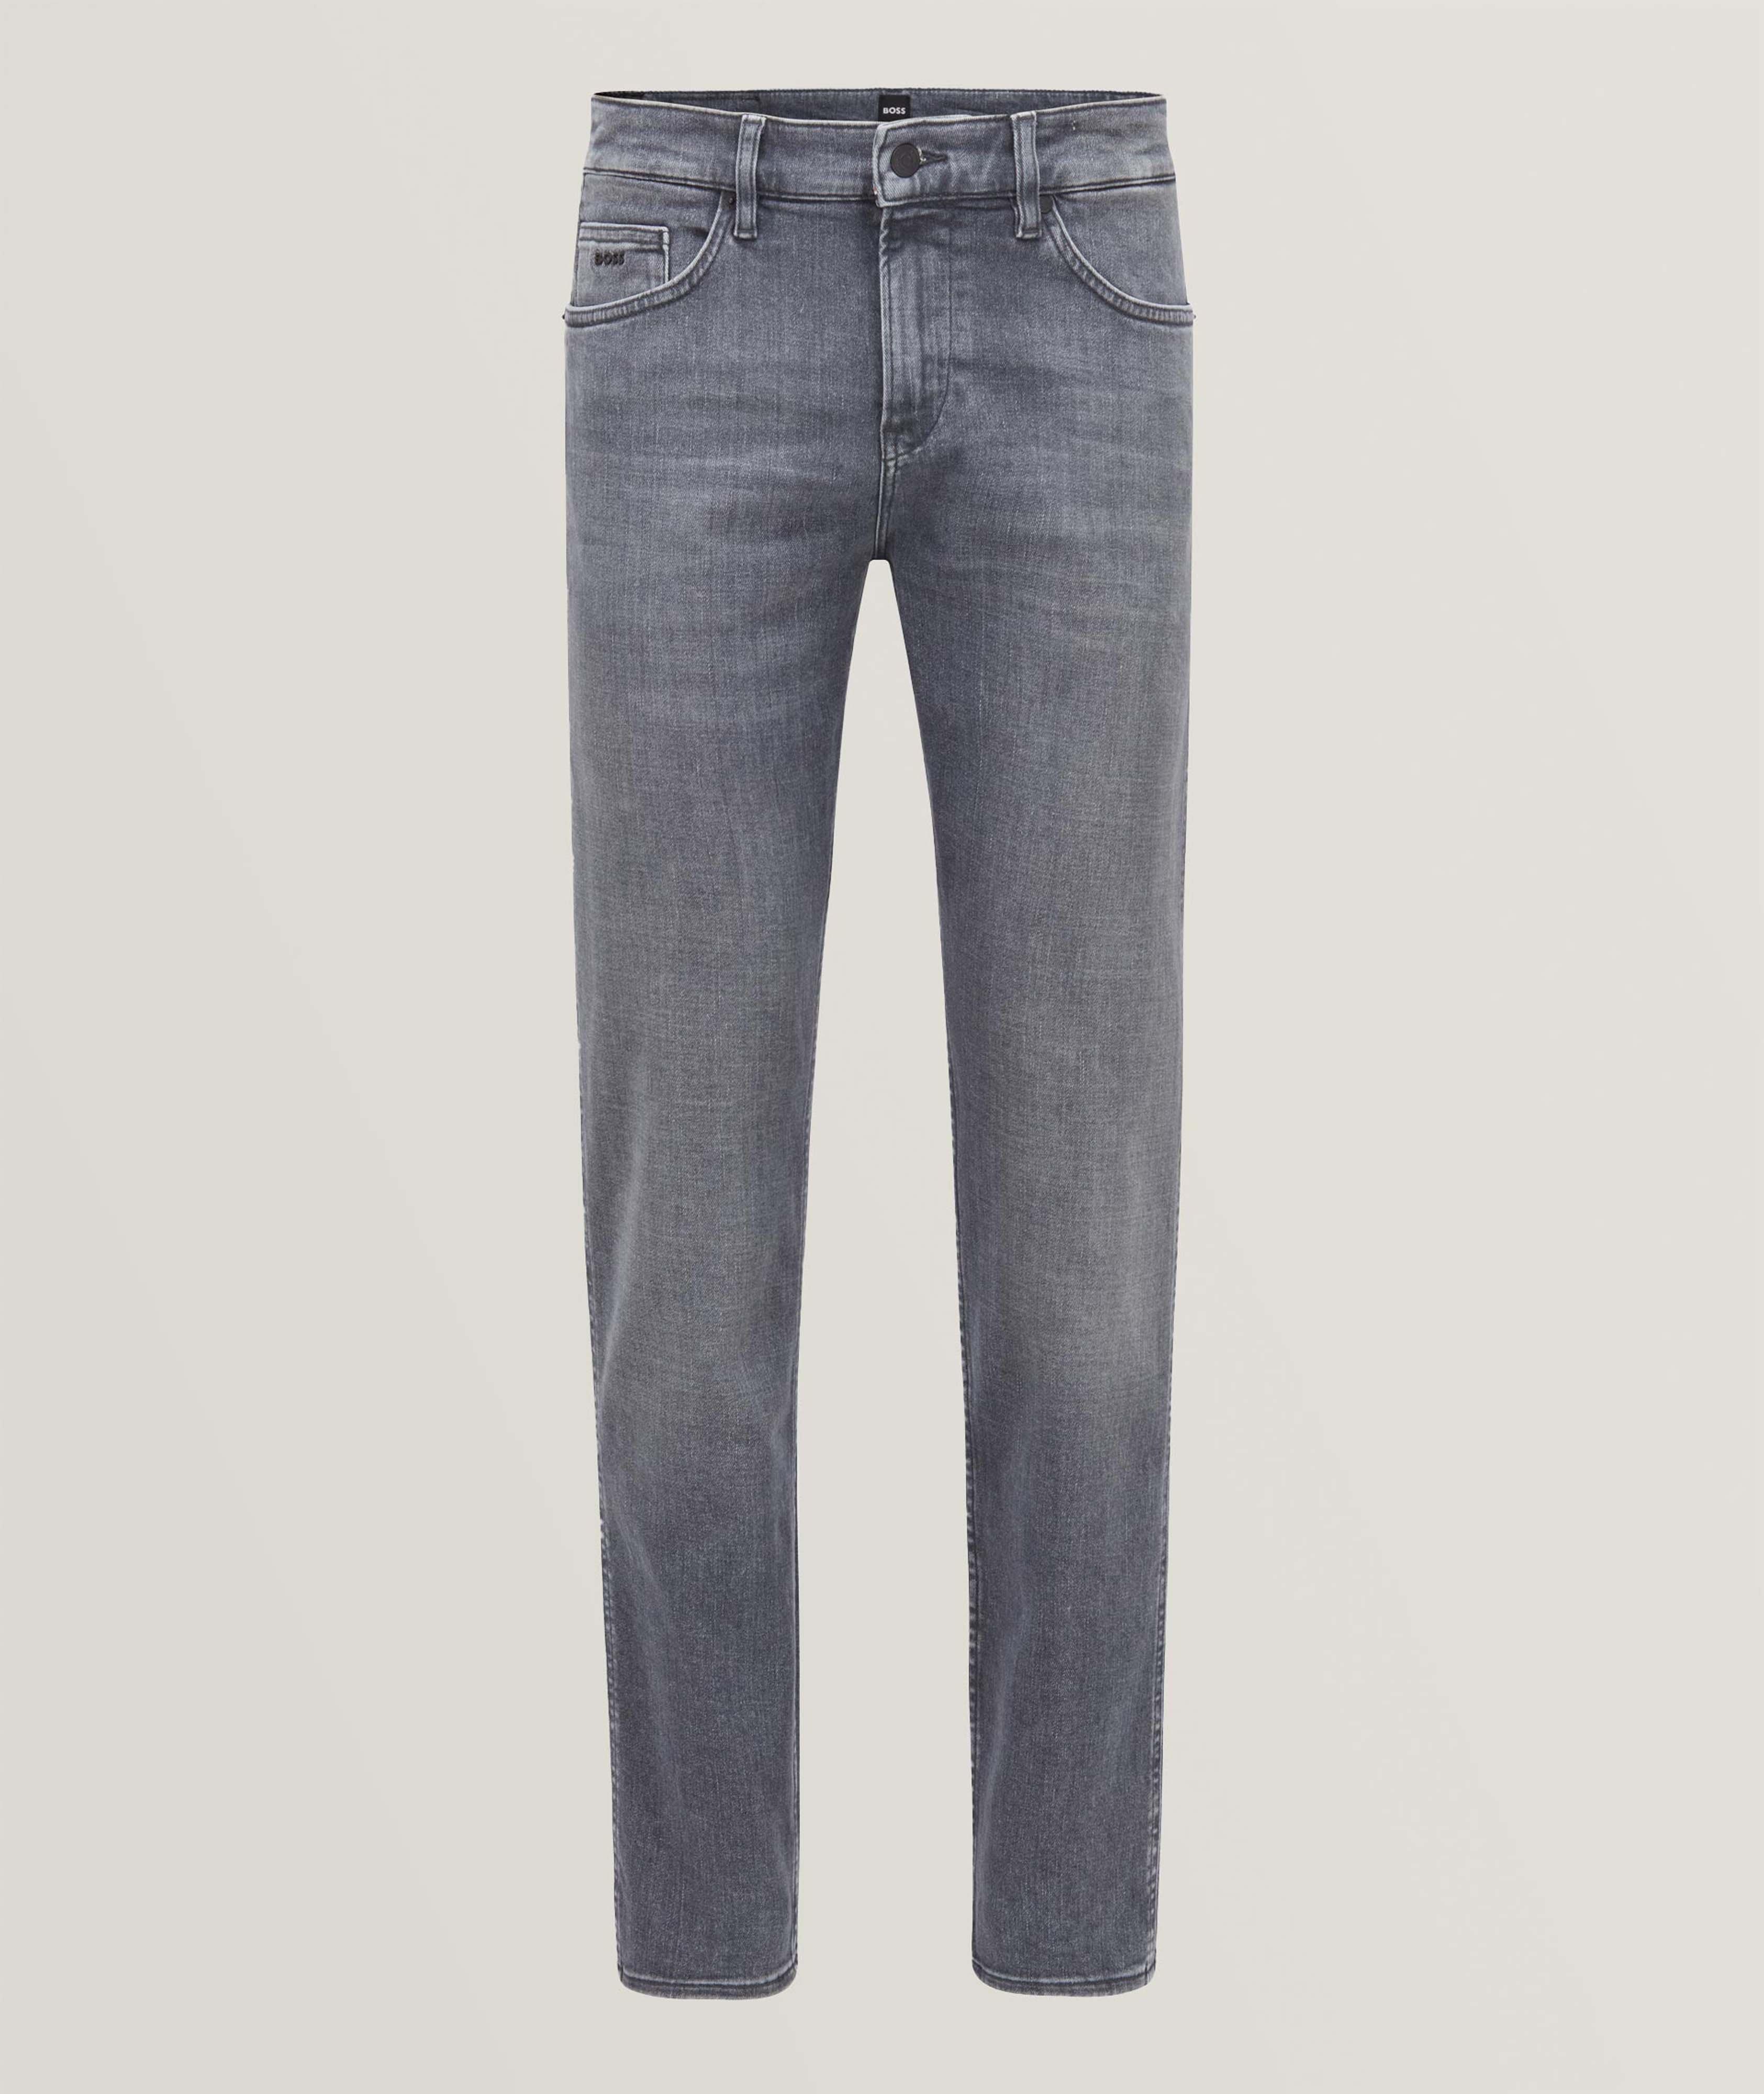 Delaware Slim-Fit Super-Stretch Jeans image 0